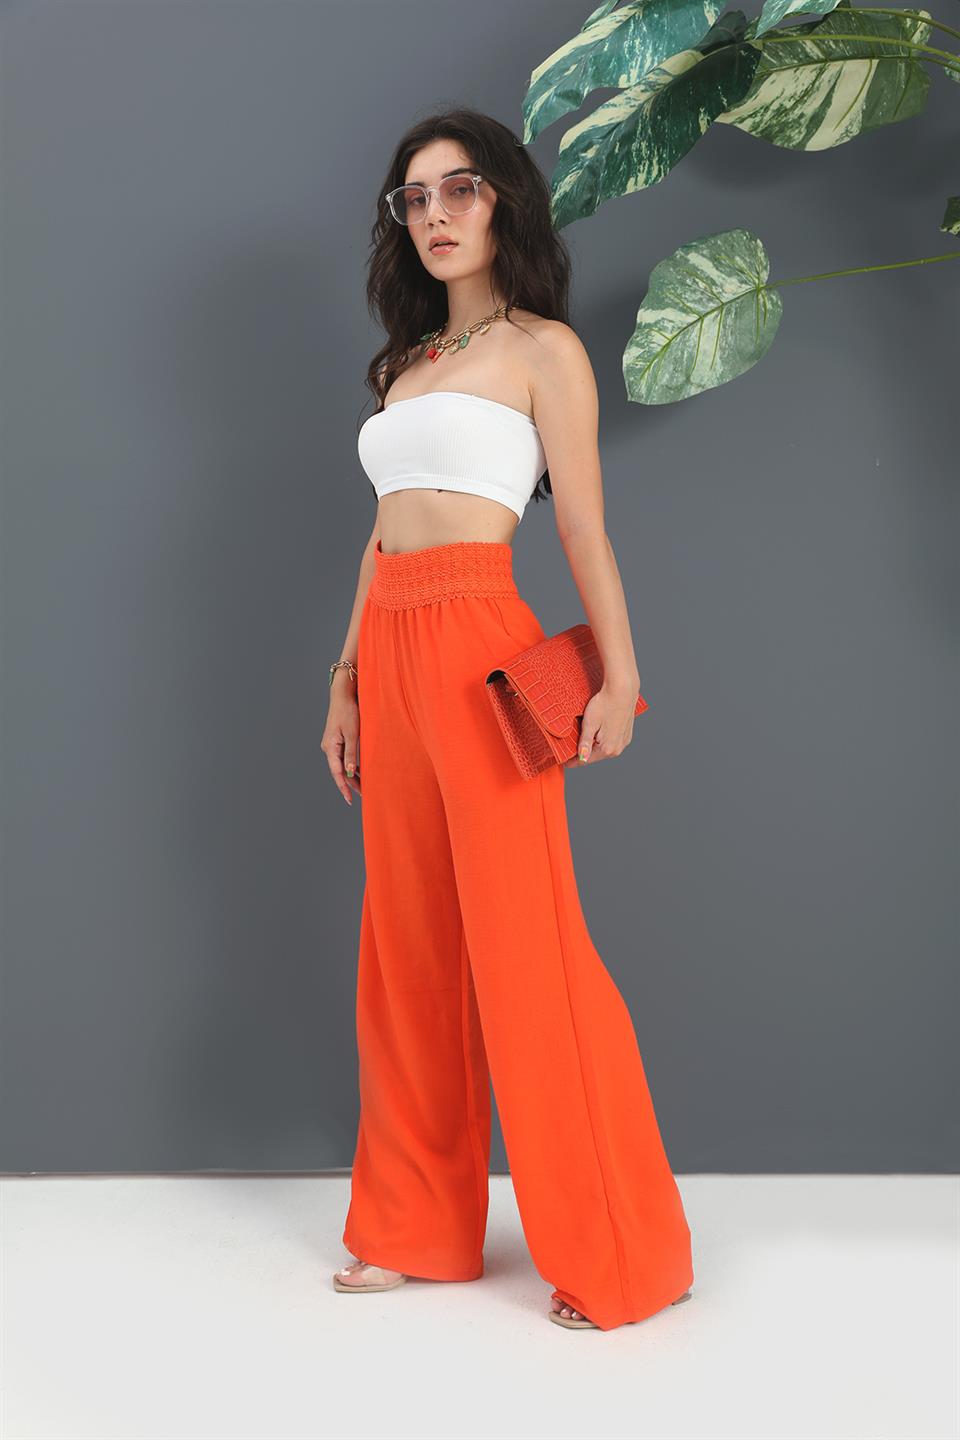 Women's Trousers Waist Knitted Wide Leg - Orange - STREET MODE ™